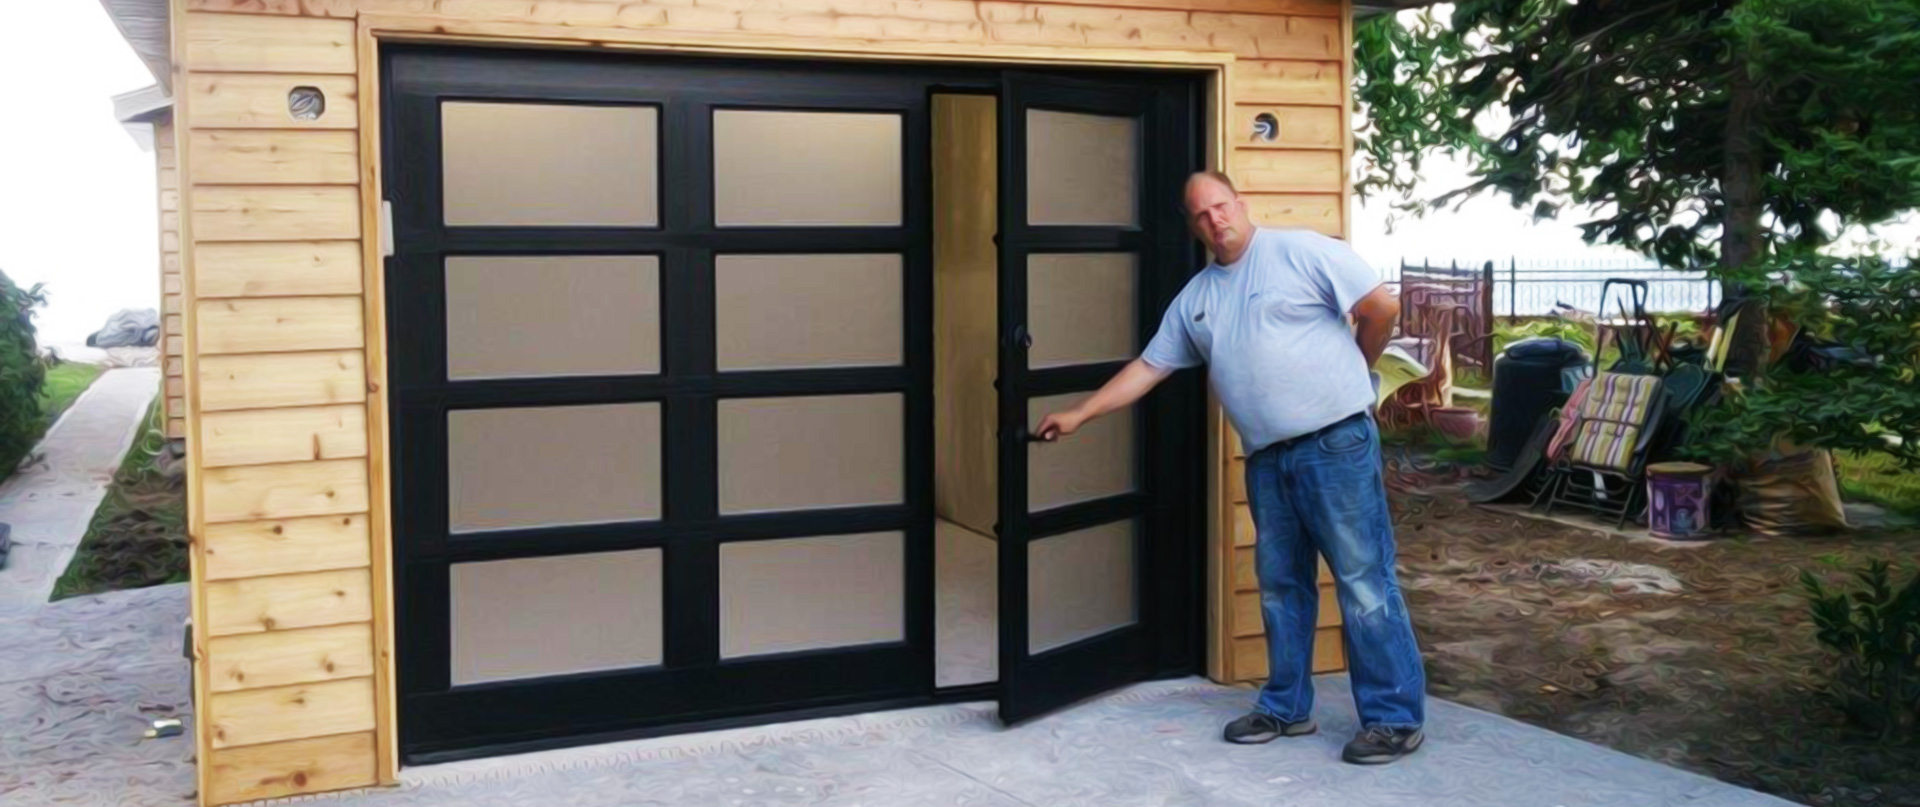 Walkthru Garage Doors - Glass Garage Doors Canada Cost